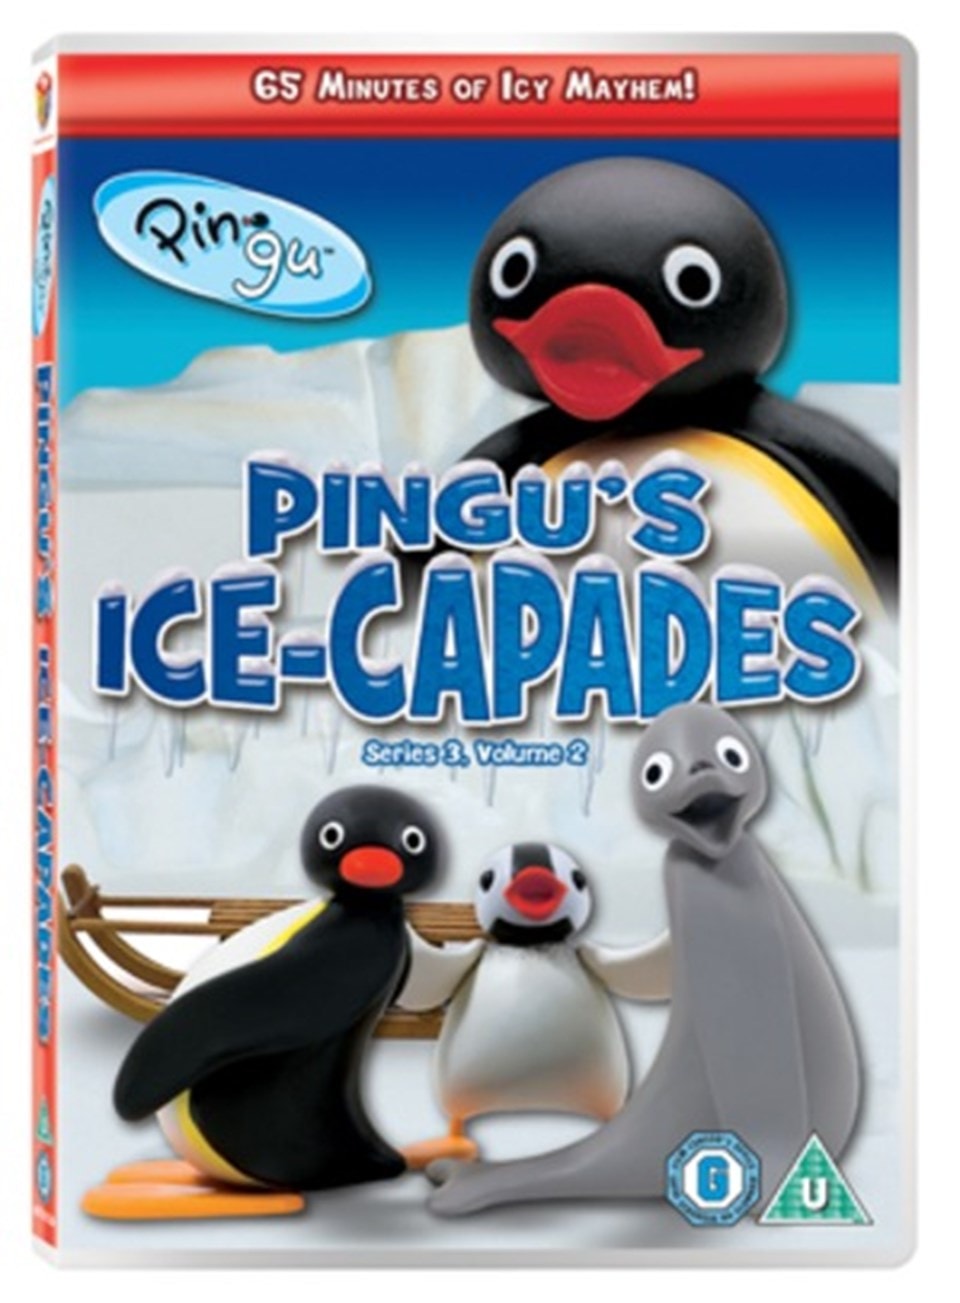 Pingu ice cream